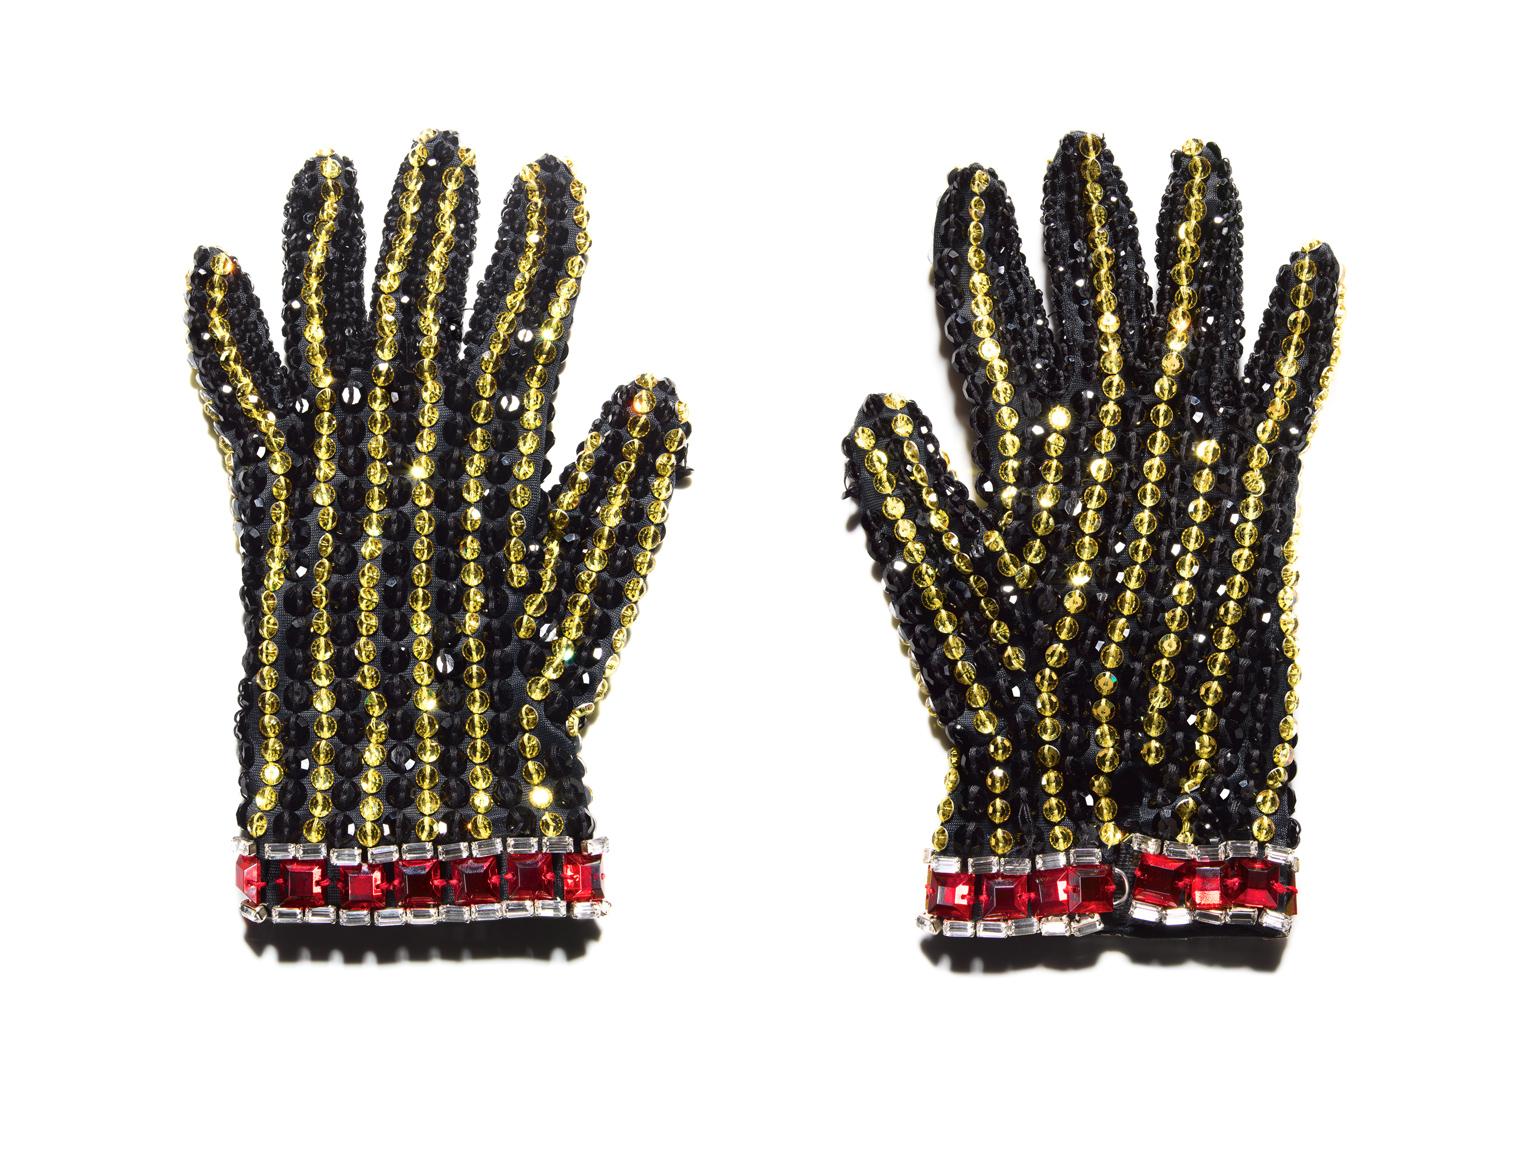 Gants noirs ( Michael Jackson )  - nature morte grand format de gant emblématique - Noir Still-Life Photograph par Tom Schierlitz